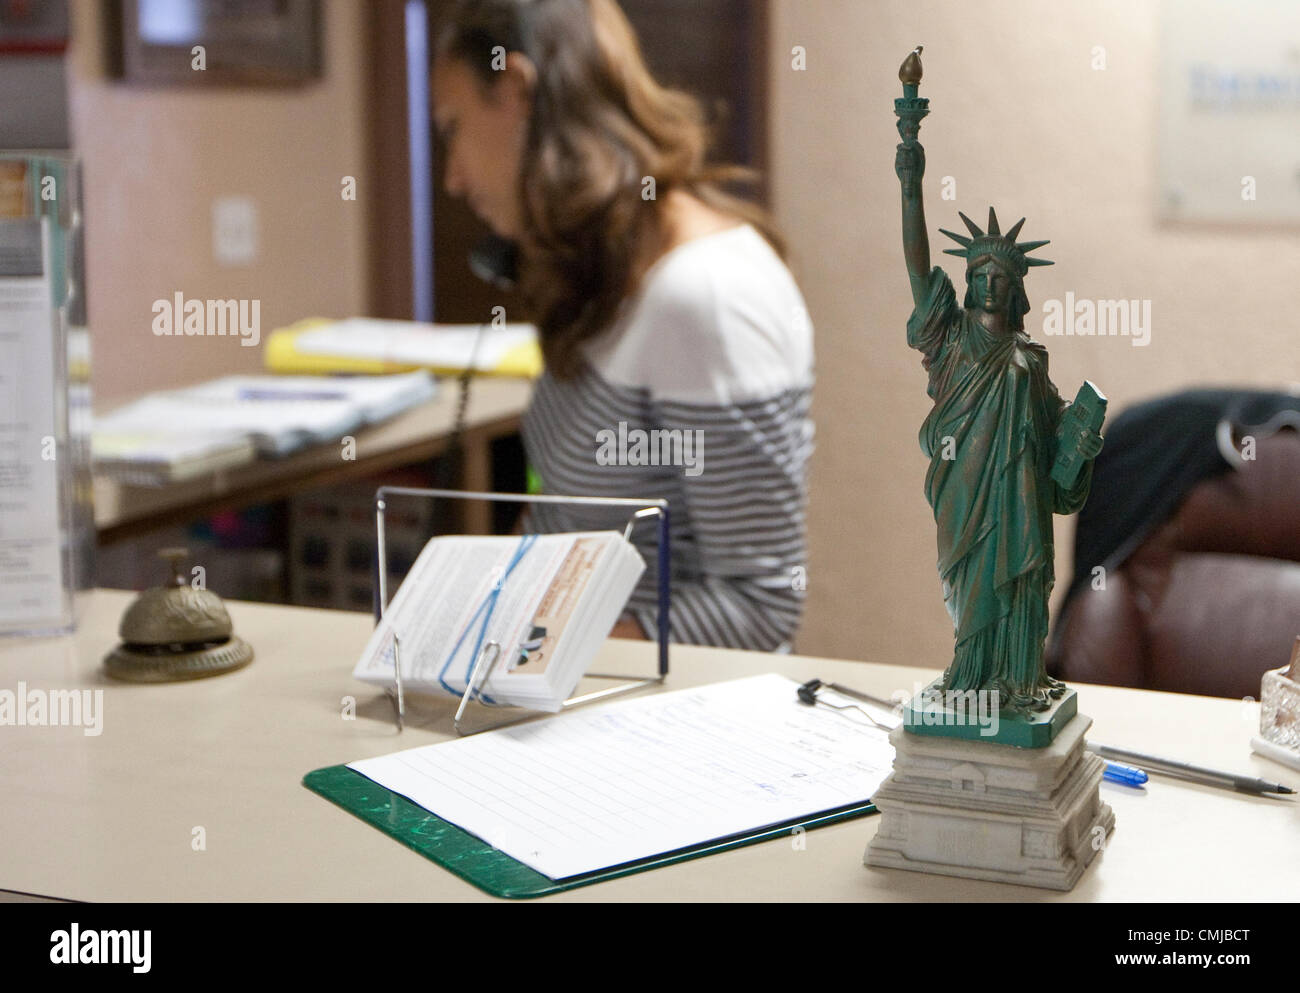 Réplique miniature de la Statue de la liberté se trouve sur réception au bureau du procureur de l'immigration à Austin, Texas Banque D'Images